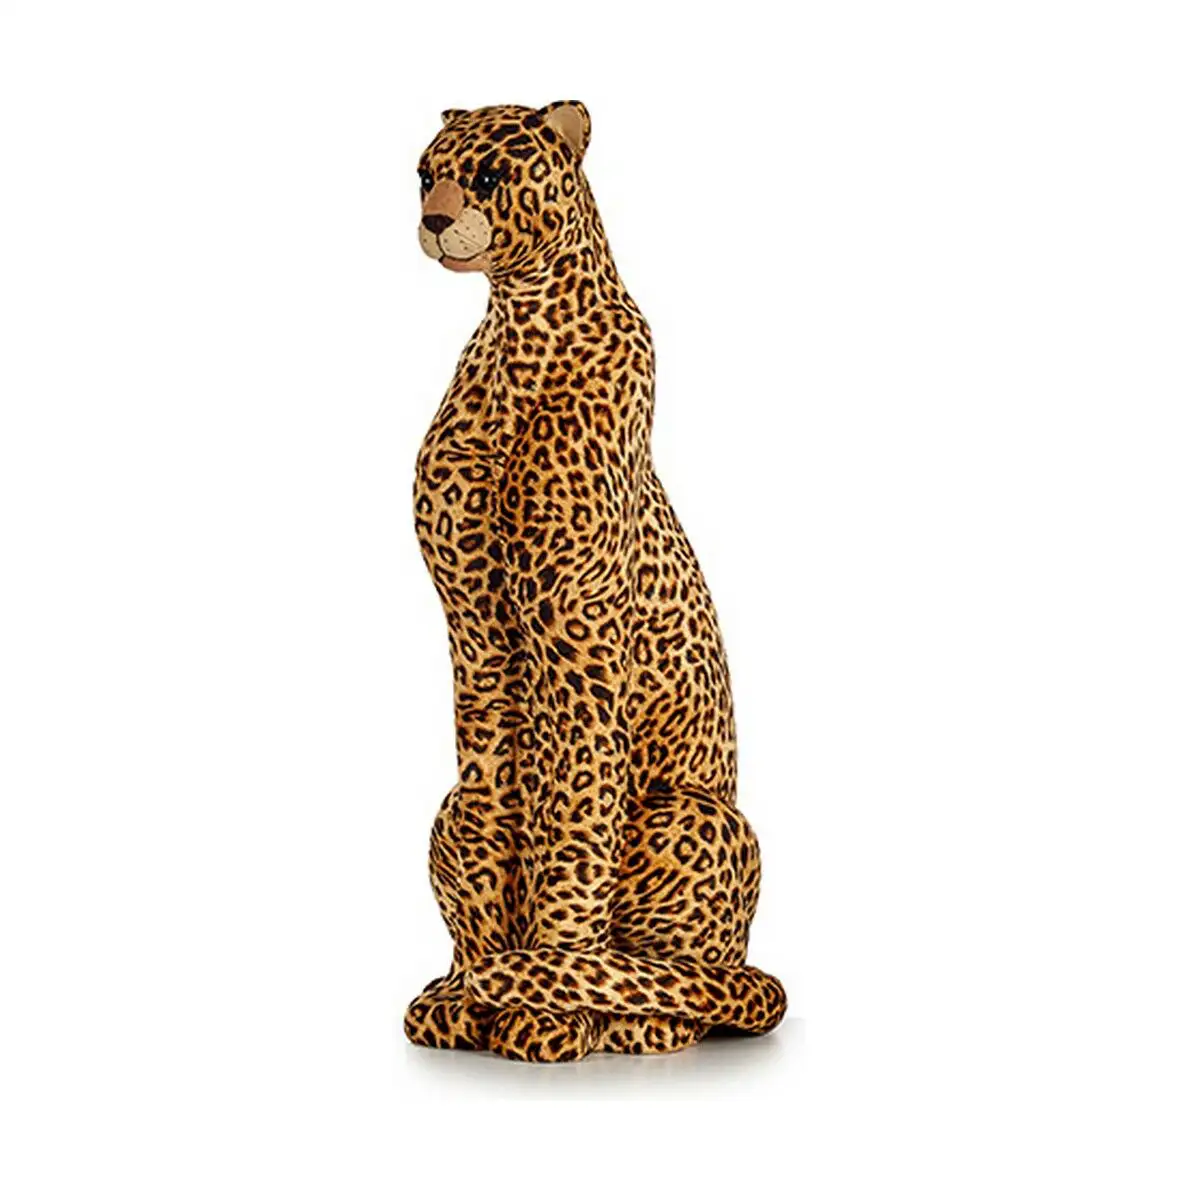 Figurine decorative marron leopard 38 x 98 x 35 cm dore synthetique_6972. DIAYTAR SENEGAL - Où Choisir est un Plaisir. Explorez notre boutique en ligne et choisissez parmi des produits de qualité qui satisferont vos besoins et vos goûts.